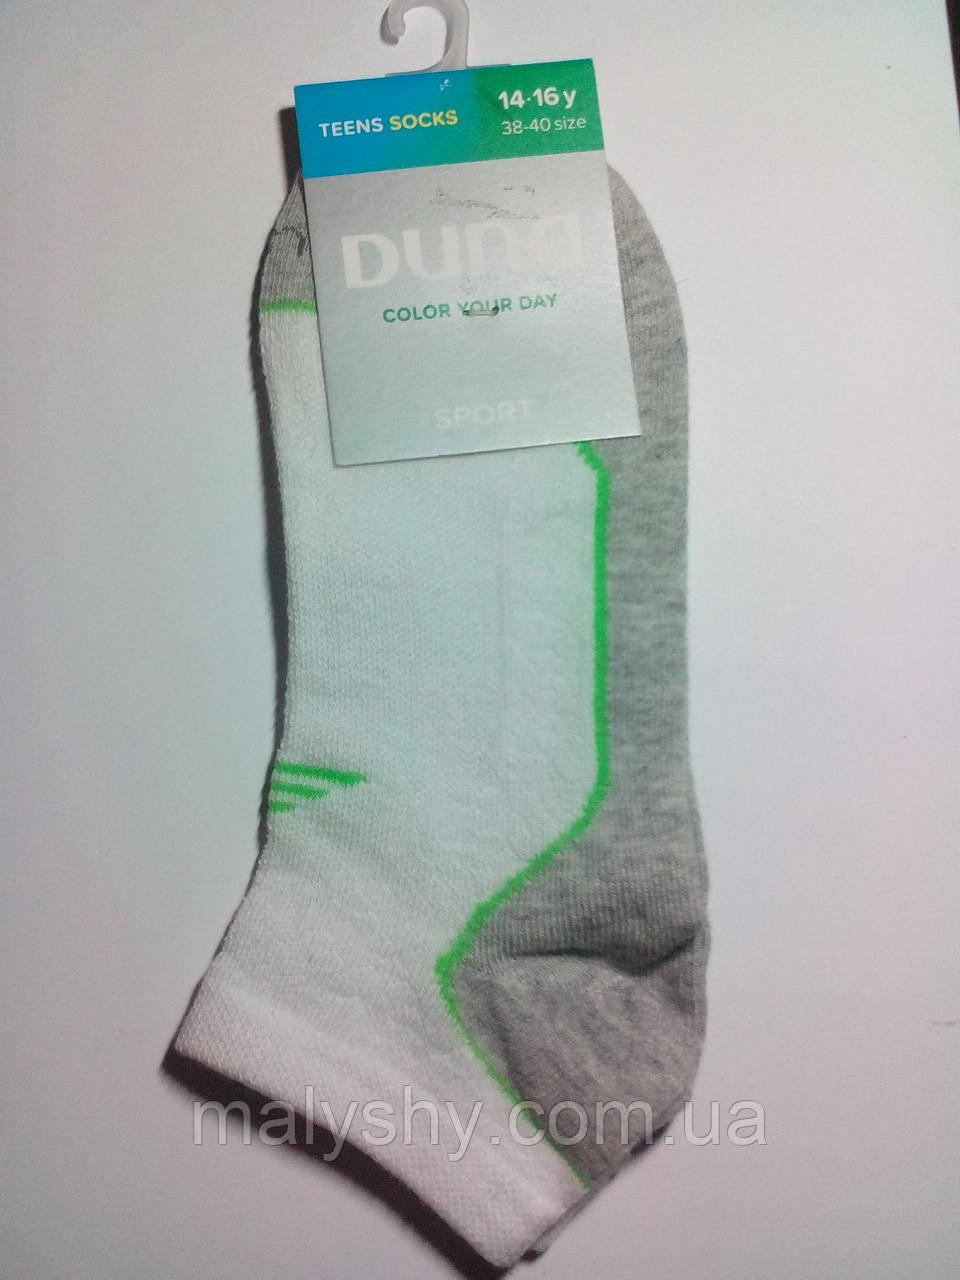 Дитячі шкарпетки — Дюна р.24-26 (шкарпетки дитиначрі) 9010-2053-світло-сірий СПОРТ